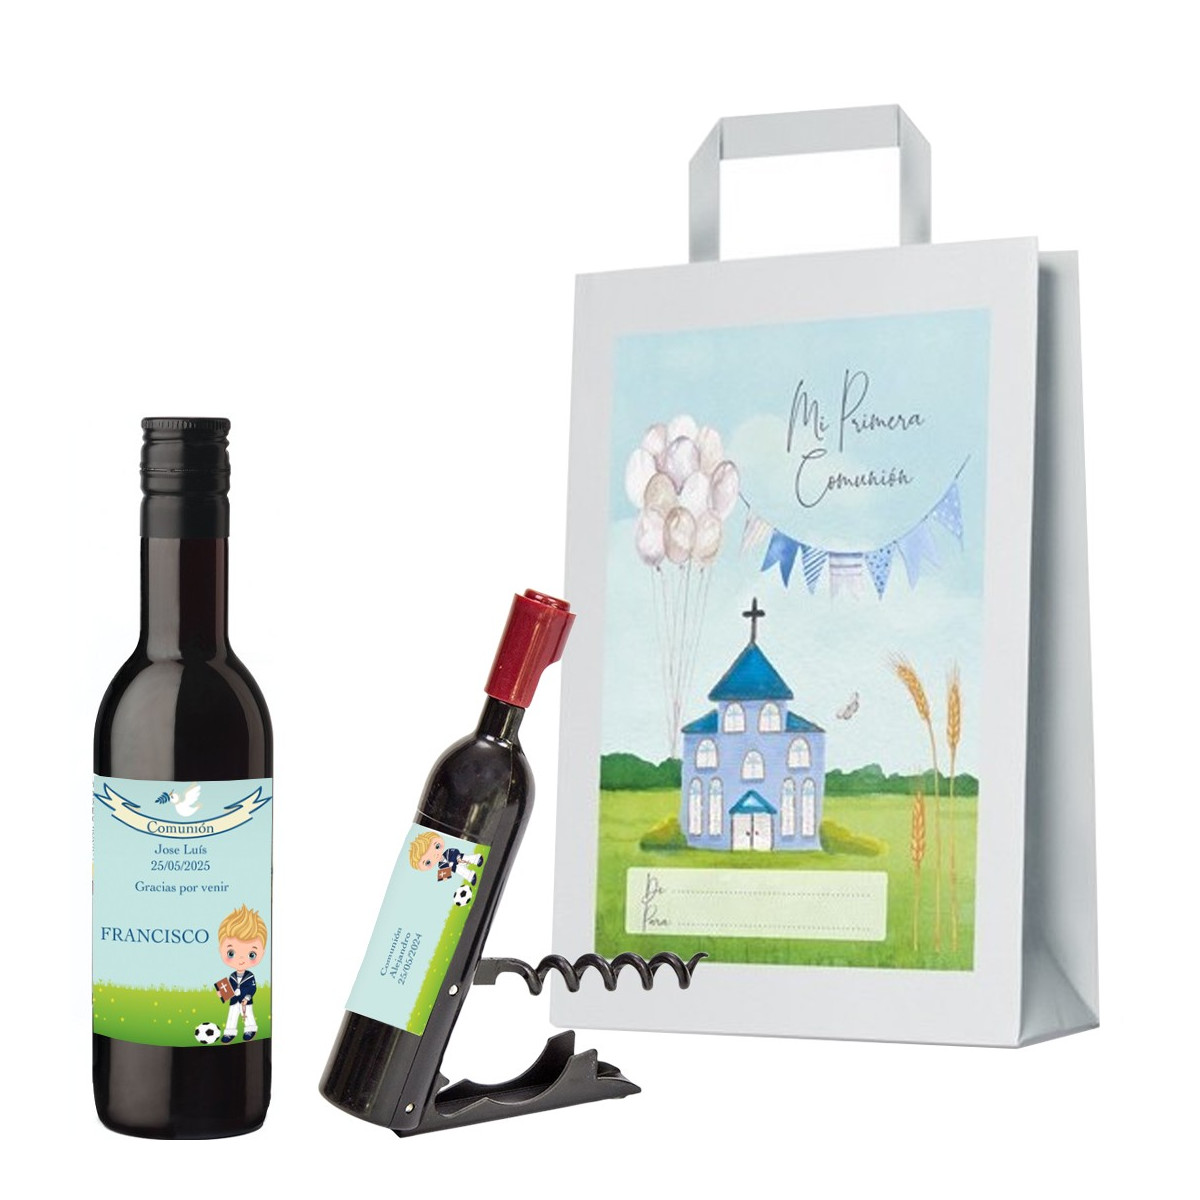 Bottiglia di vino e cavatappi personalizzati con nome dell ospite nome del bambino e data in sacchetto regalo per la comunione